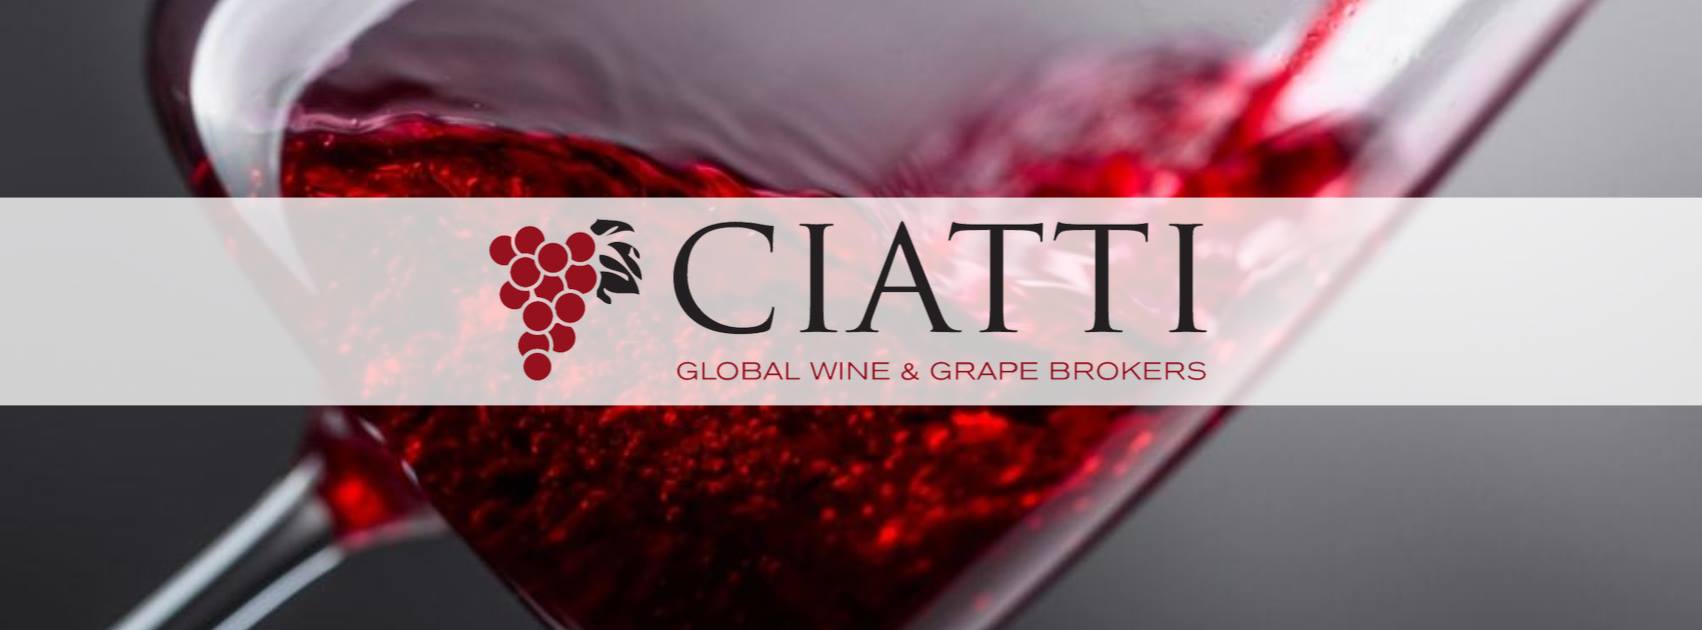 Ciatti Wine Company